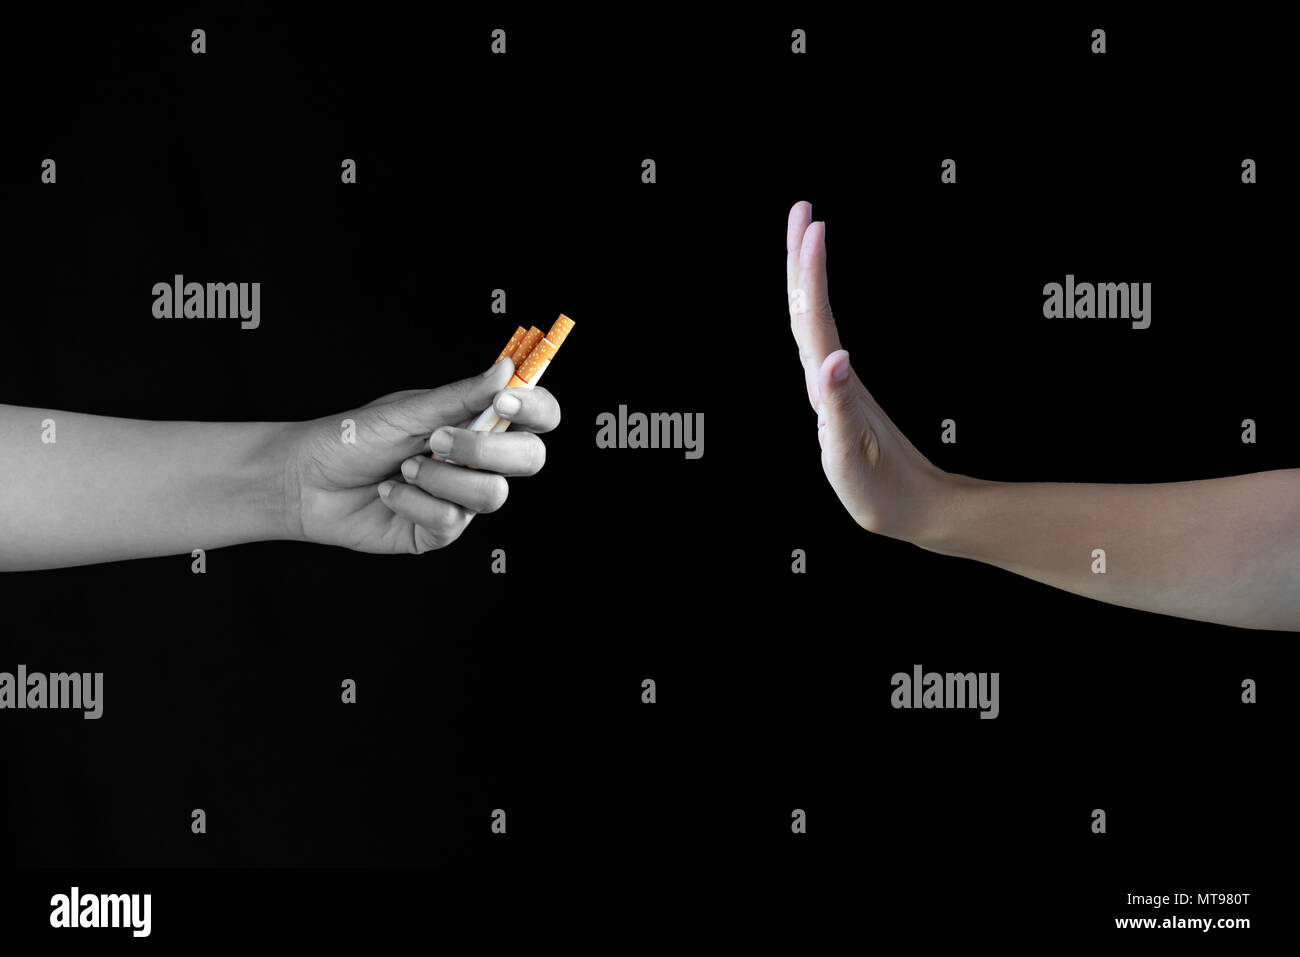 Weltnichtrauchertag, dem 31. Mai. Sagen Sie einfach nein zu Rauchen aufhören. Nahaufnahme der Hand ablehnen Zigarette bieten auf schwarzem Hintergrund. Stockfoto